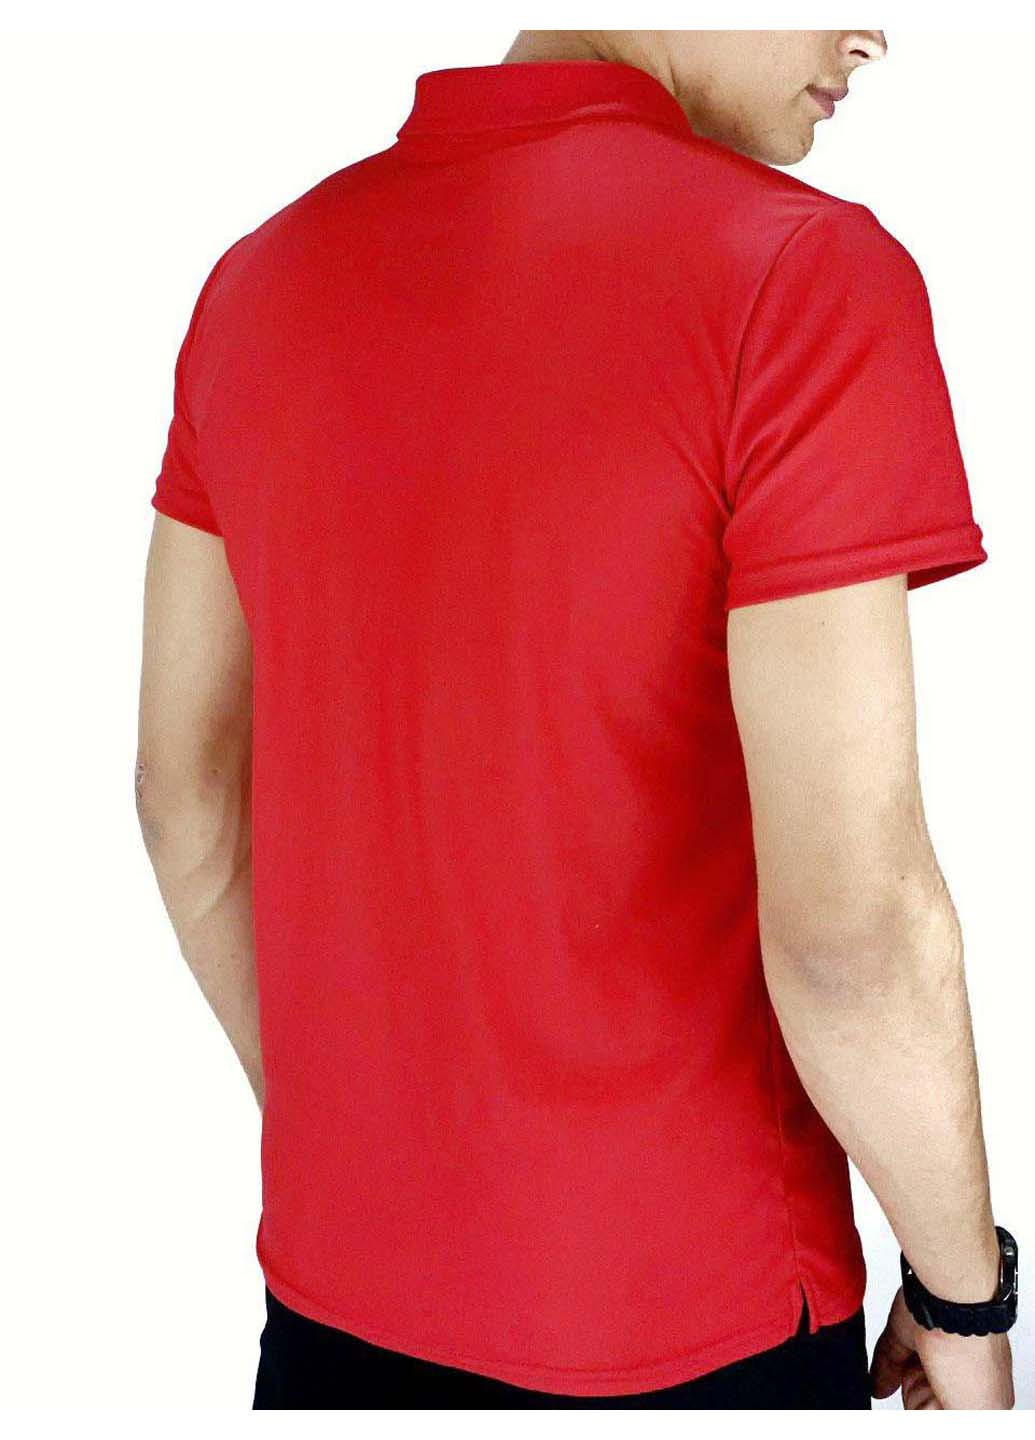 Красная футболка-поло для мужчин Intruder однотонная